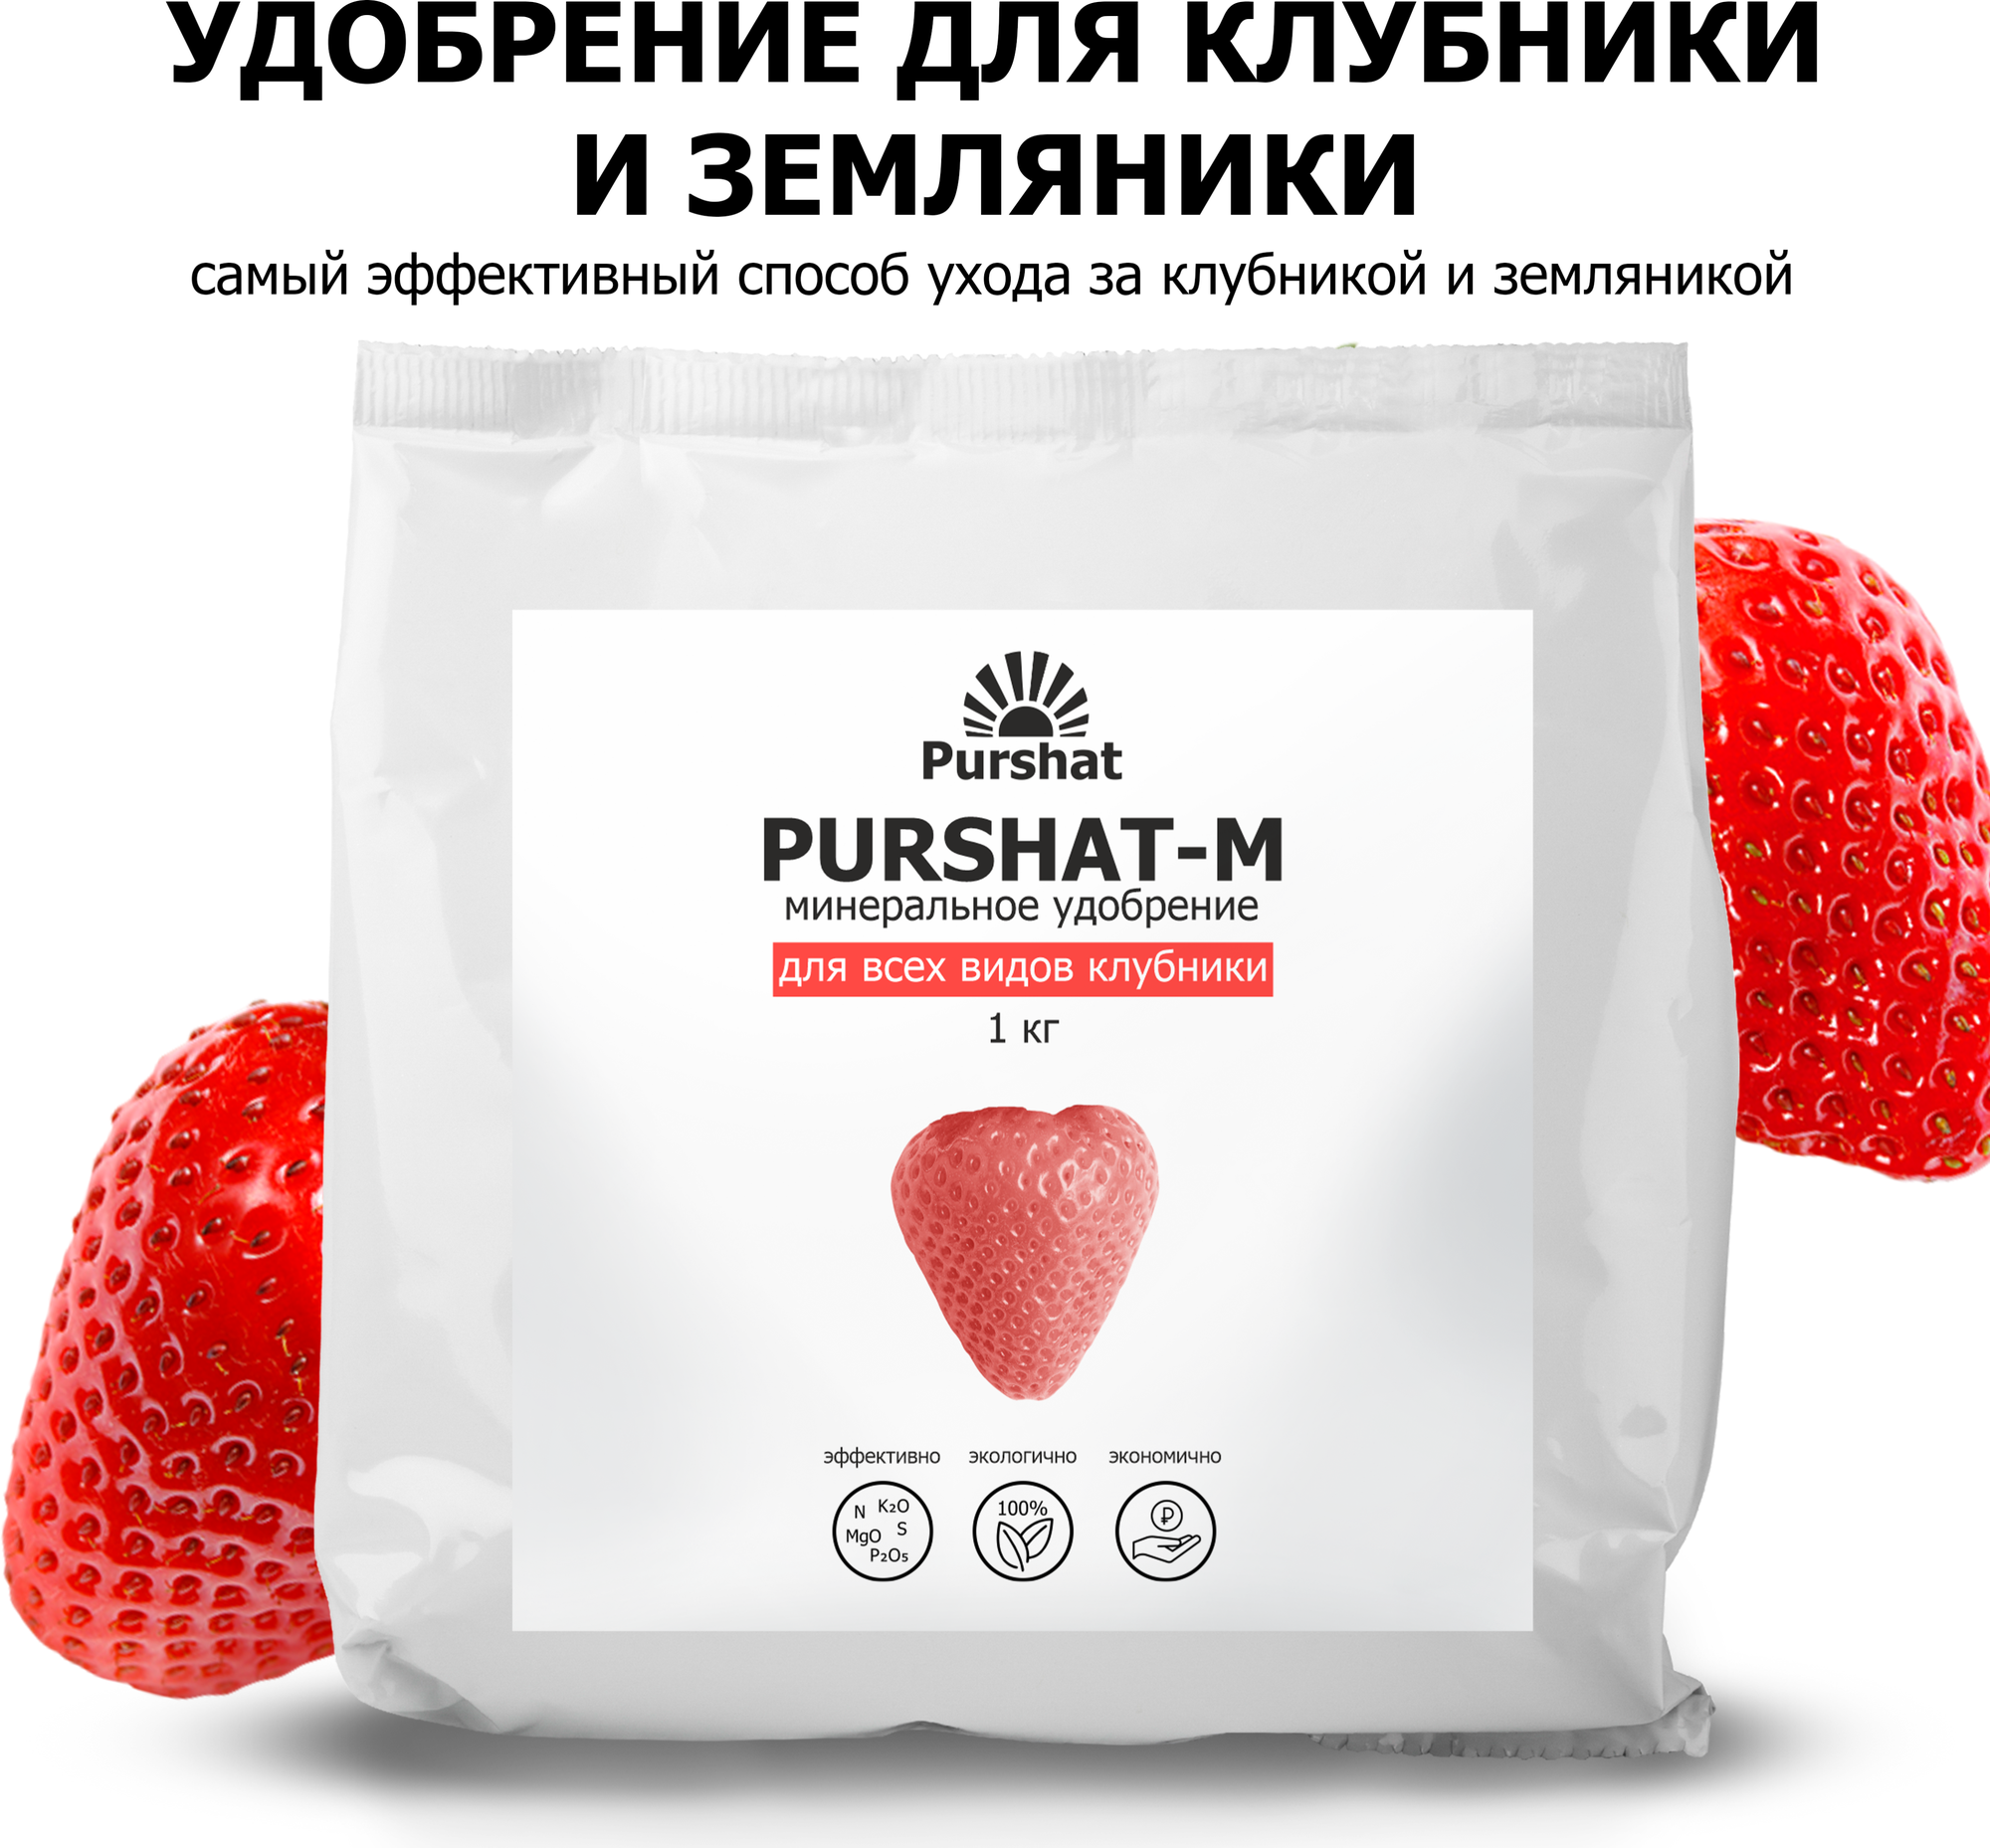 Удобрение для клубники и земляники, подкормка для клубники Пуршат-Мводорастворимое 1 кг — купить в интернет-магазине по низкой цене на ЯндексМаркете